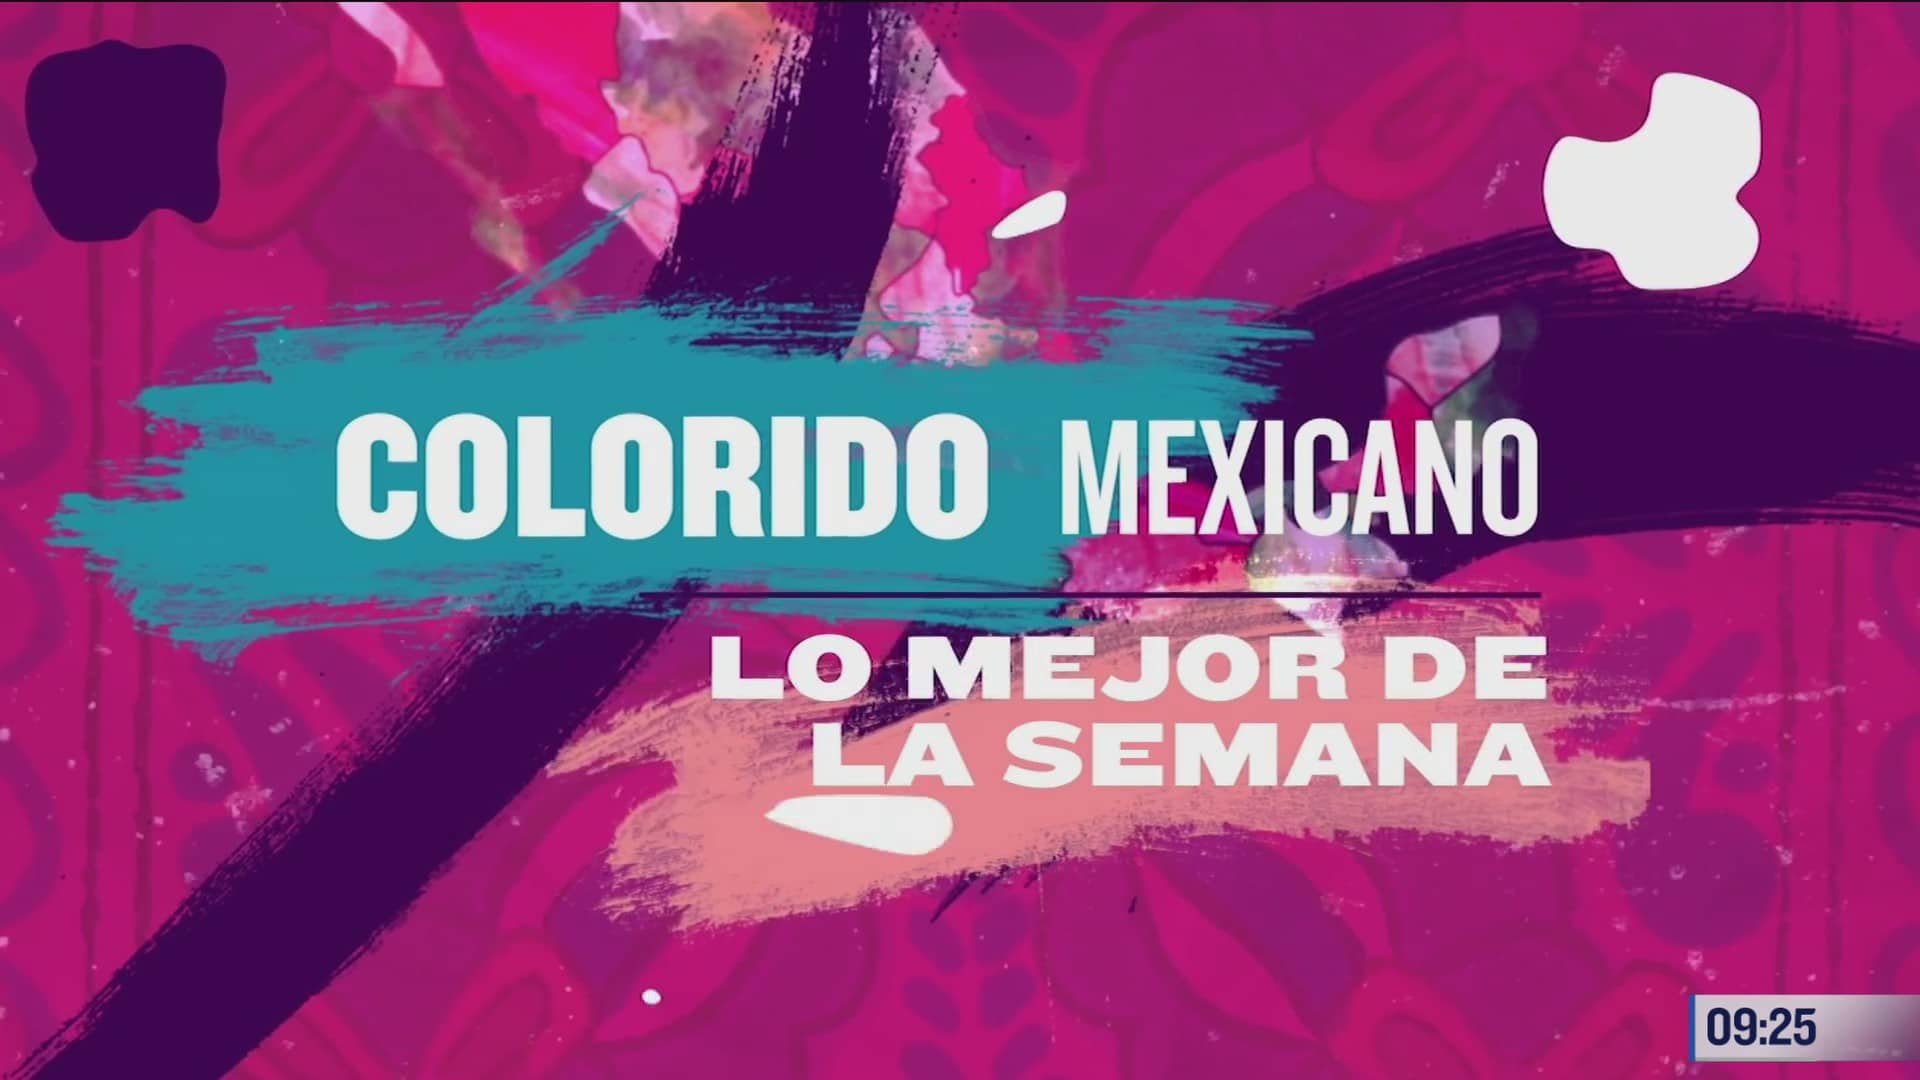 resumen semanal del colorido por la republica mexicana 6 dic